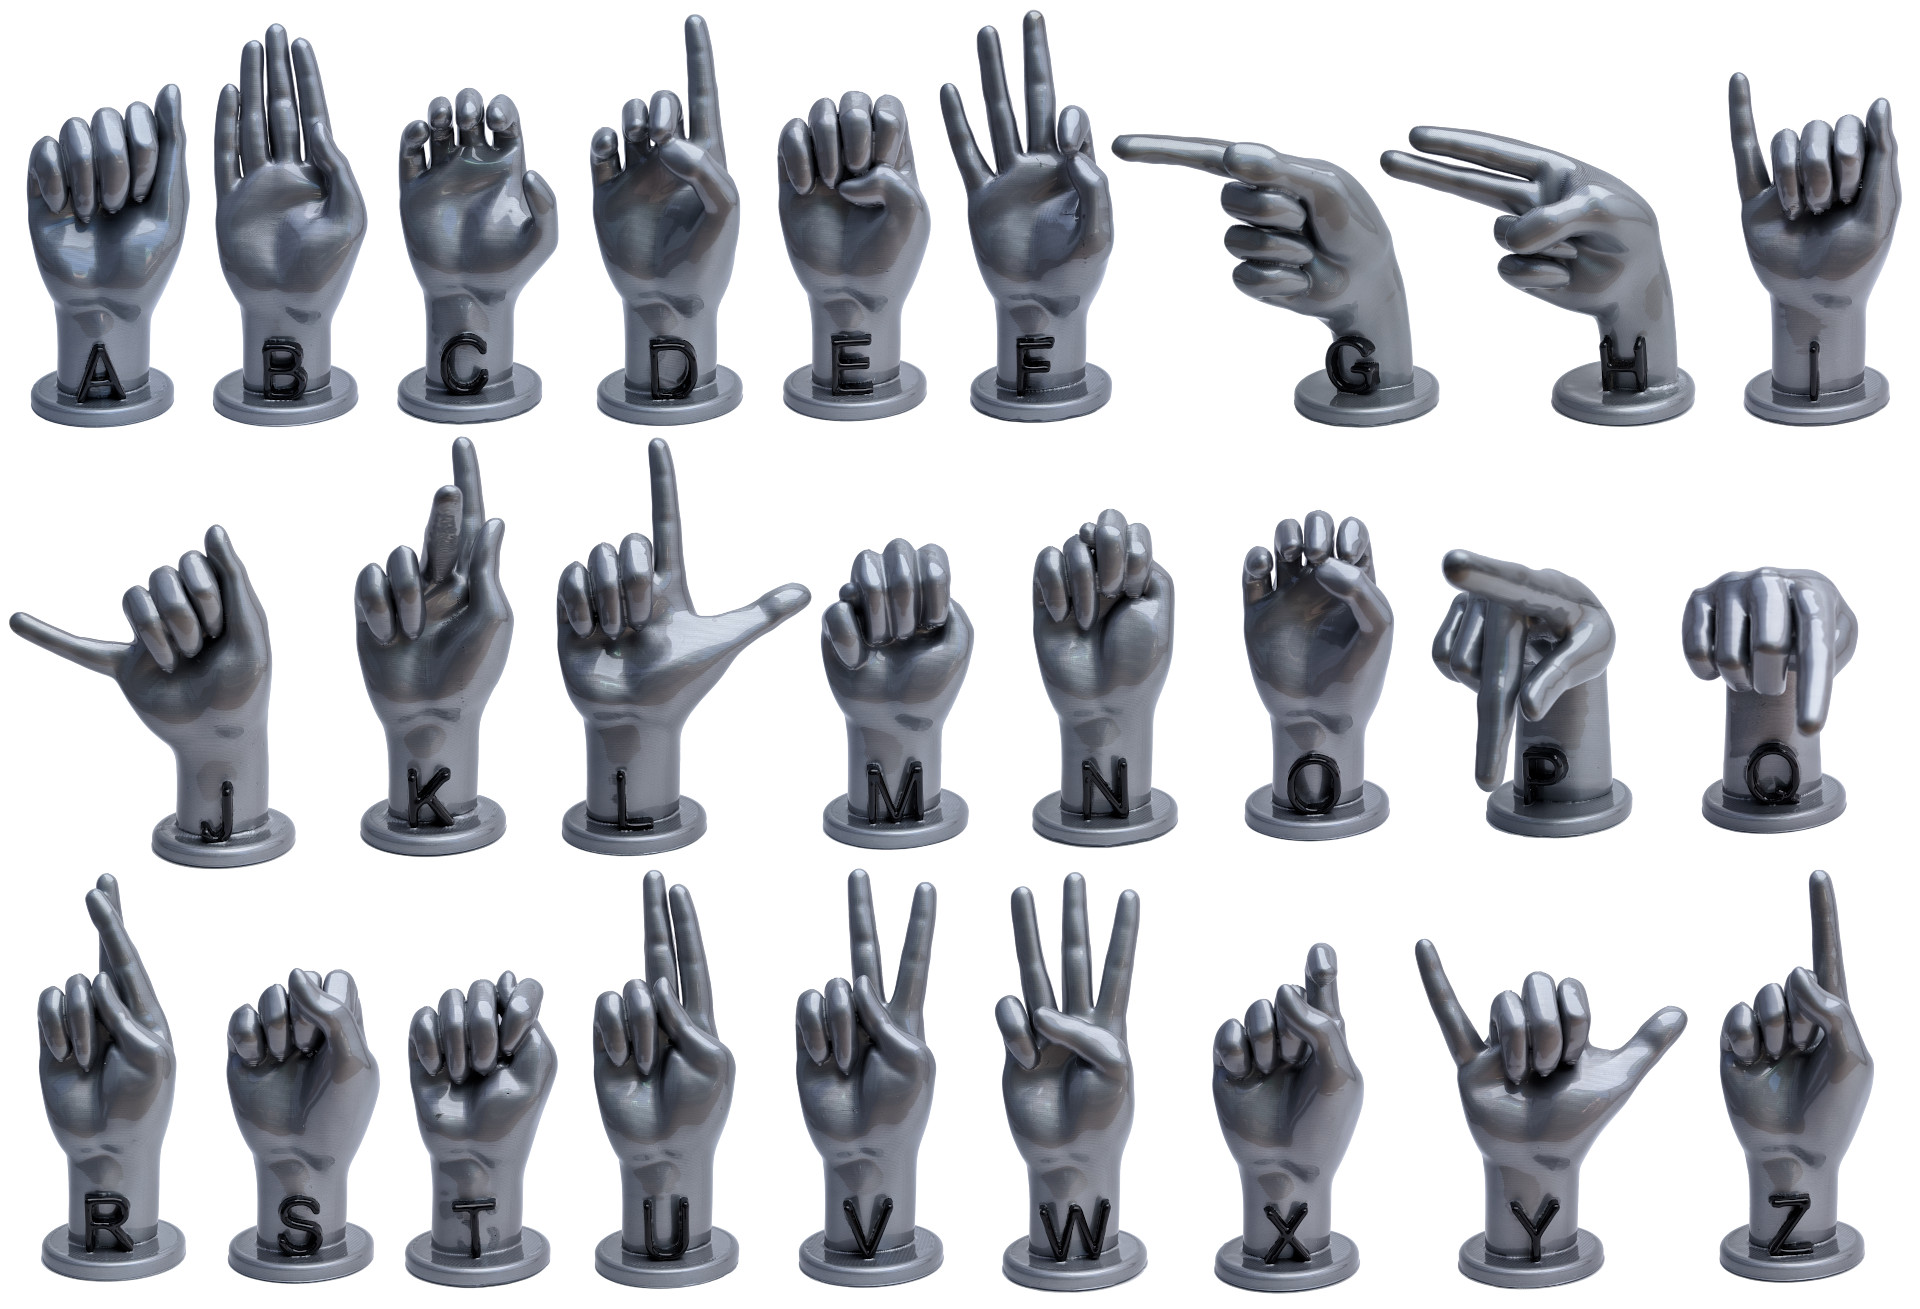 3D Printed ASL Hands – Alphabet, Large